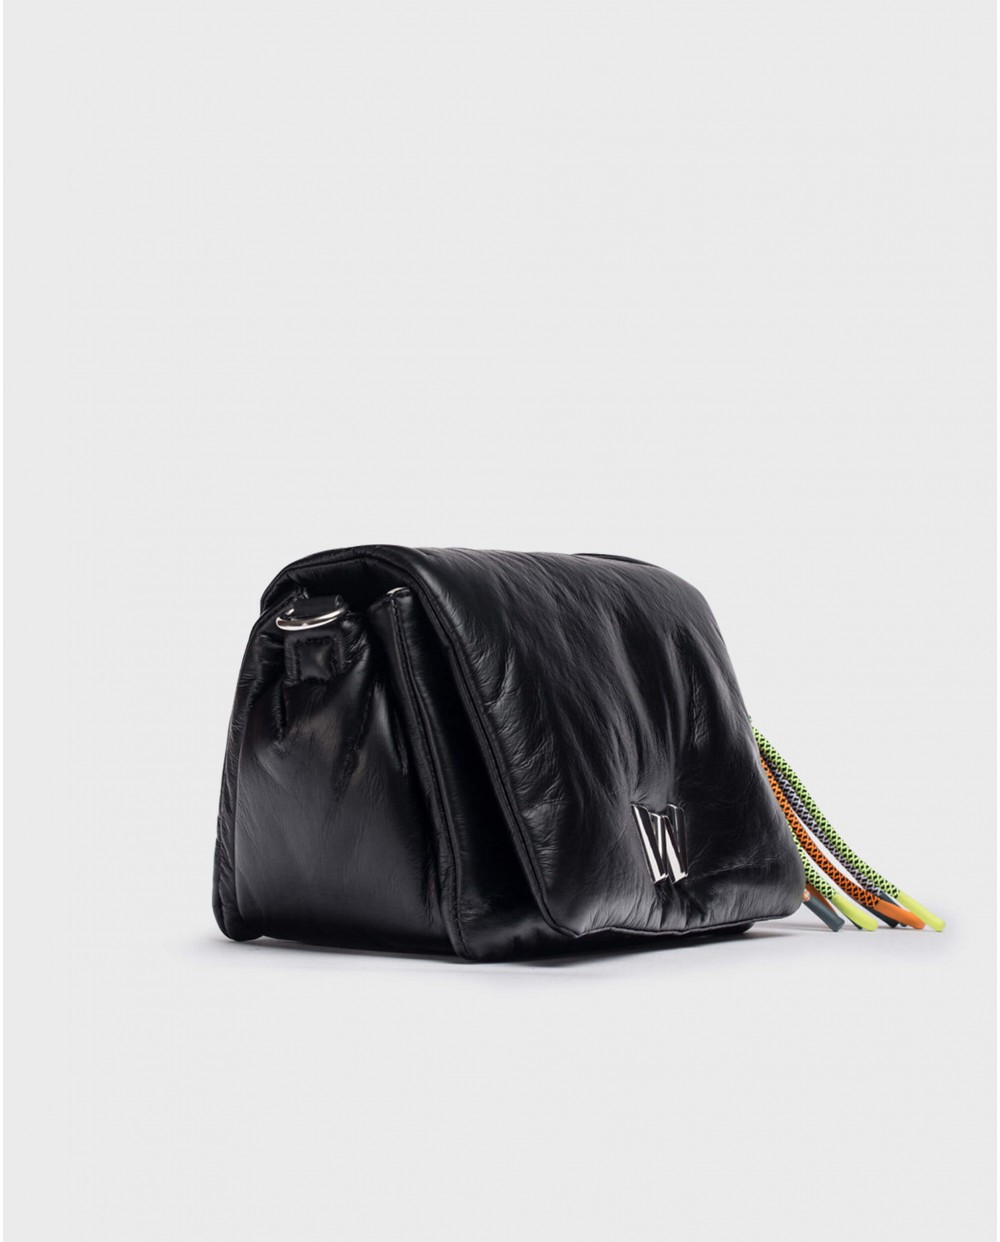 Wonders-Bags-black BERLINO bag